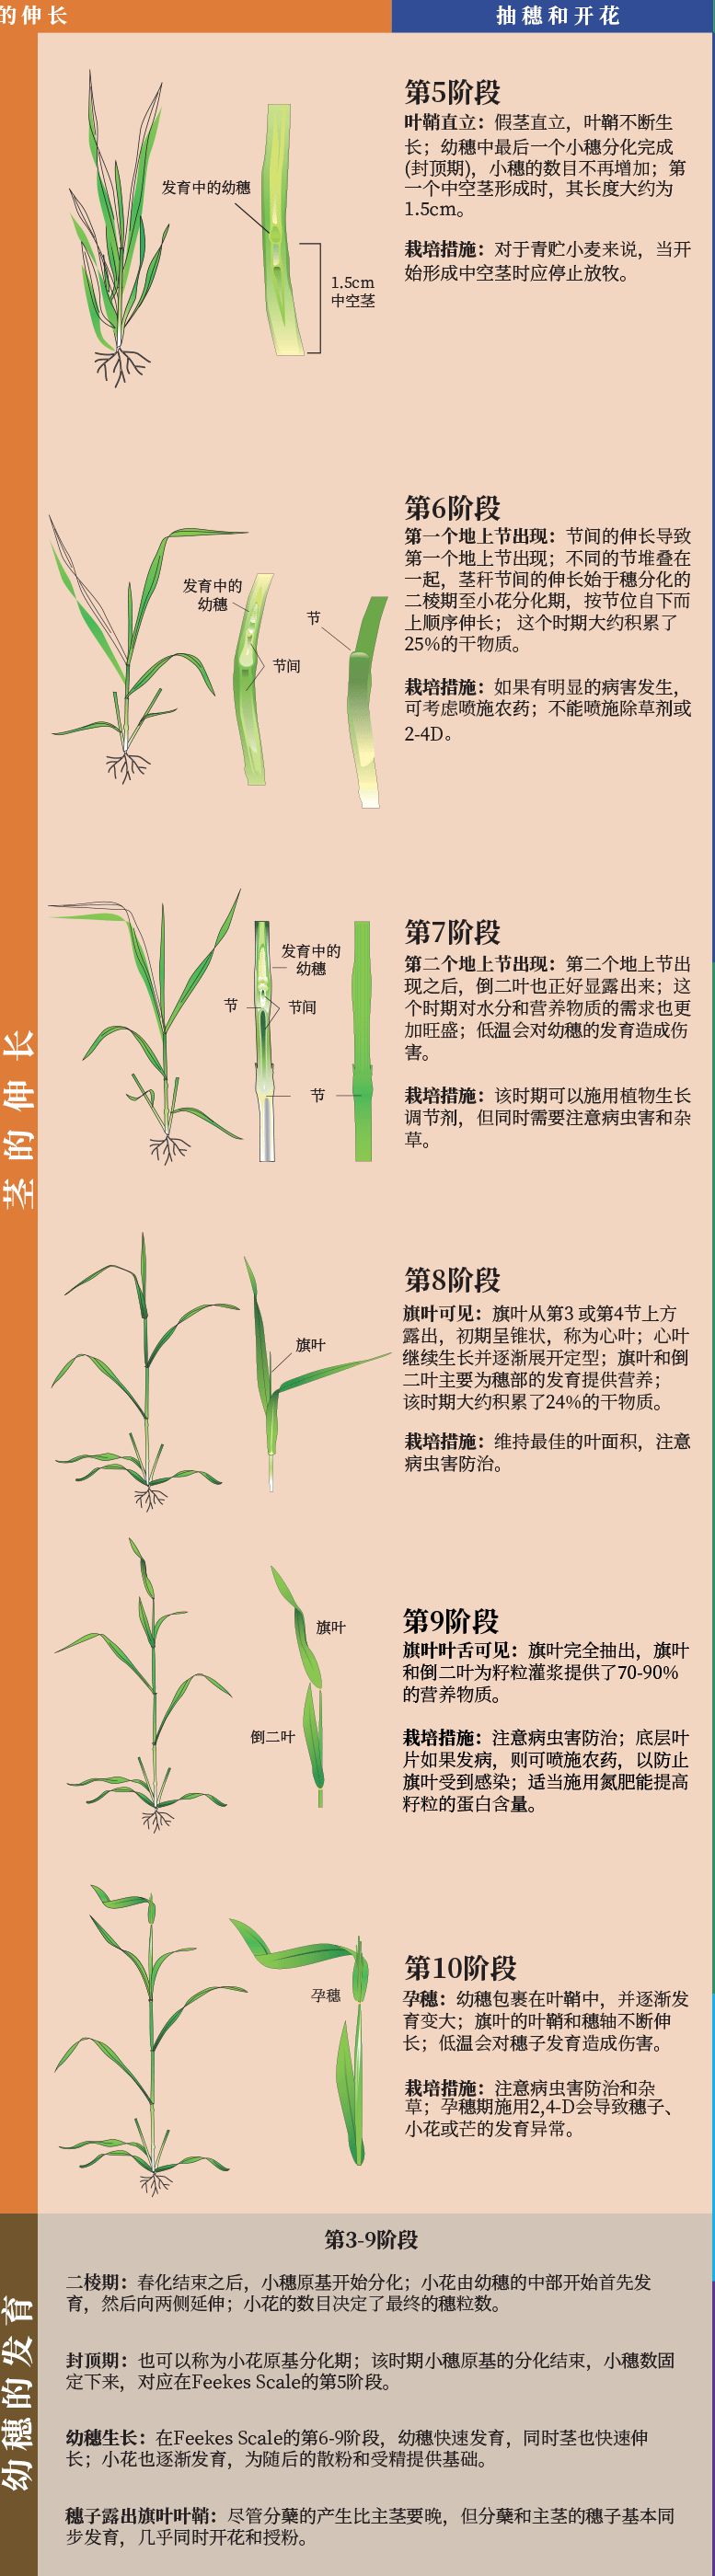 附:小麦生长发育图除草剂和各种植物营养调节剂的施用给农业生产带来